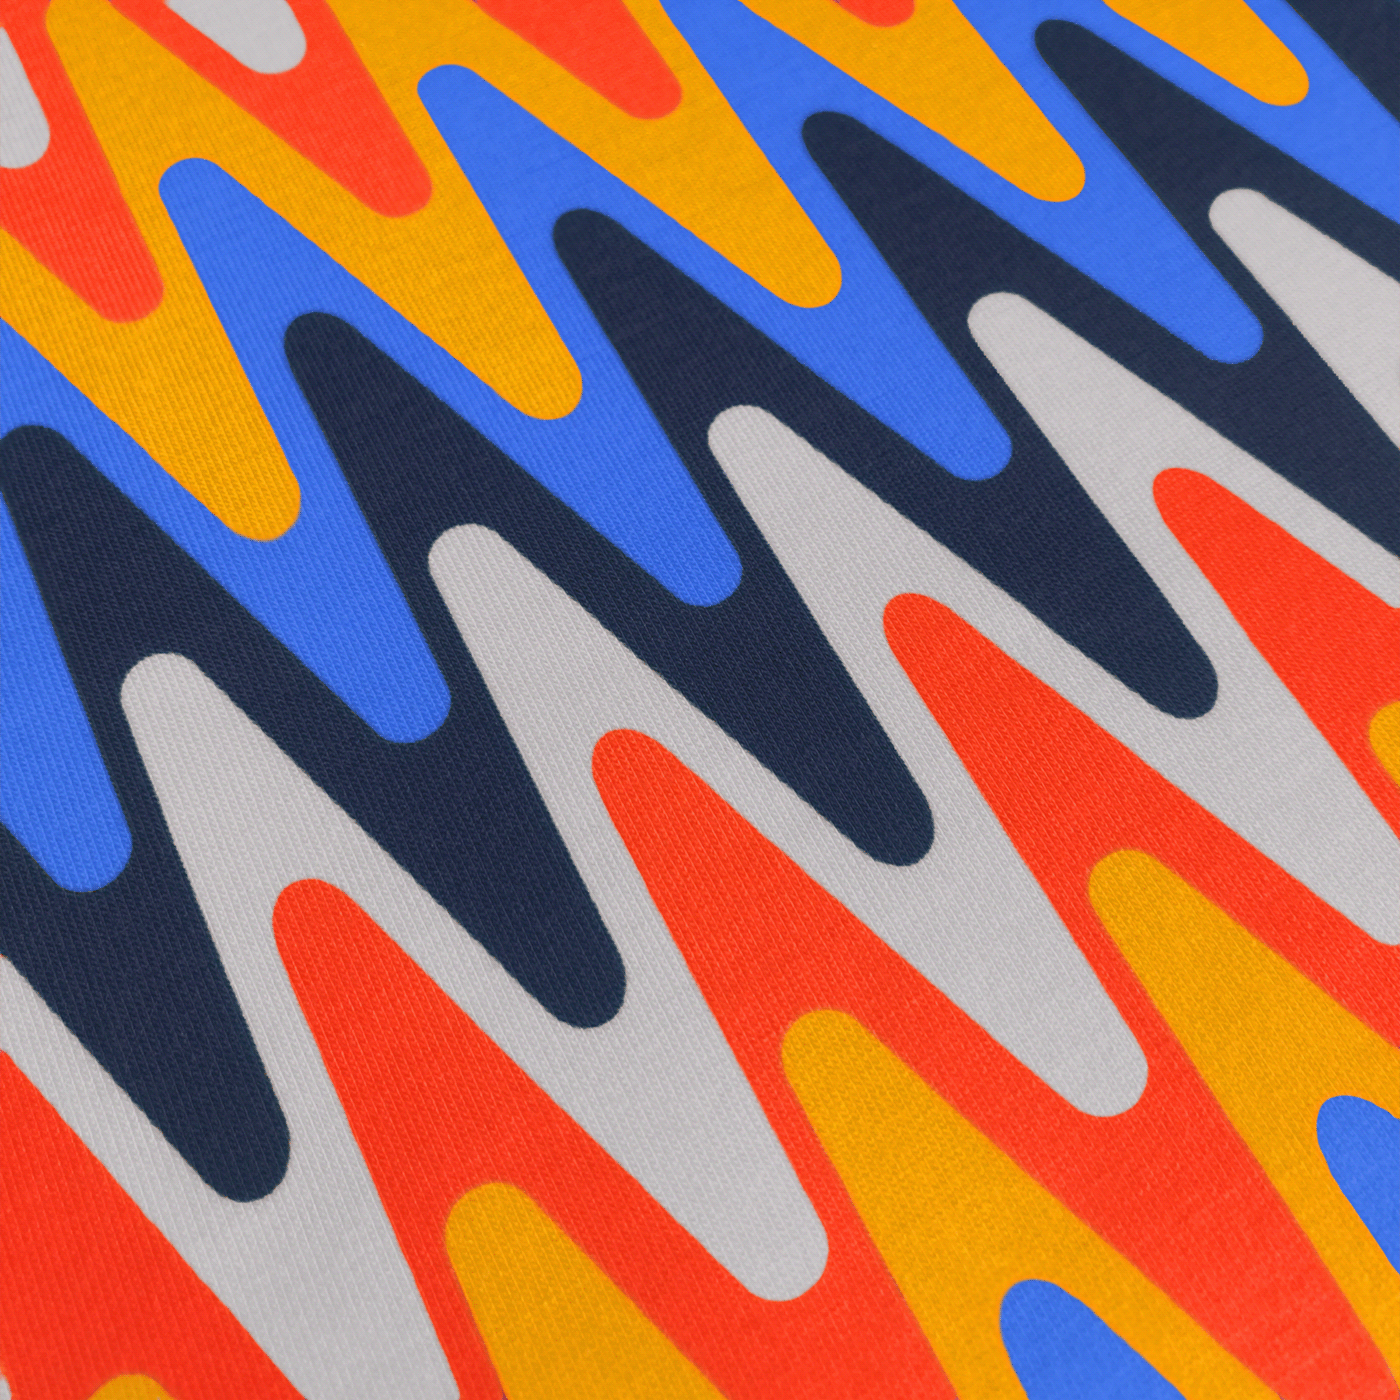 Sine Wave op art pattern in Racecar (primary color) colorway